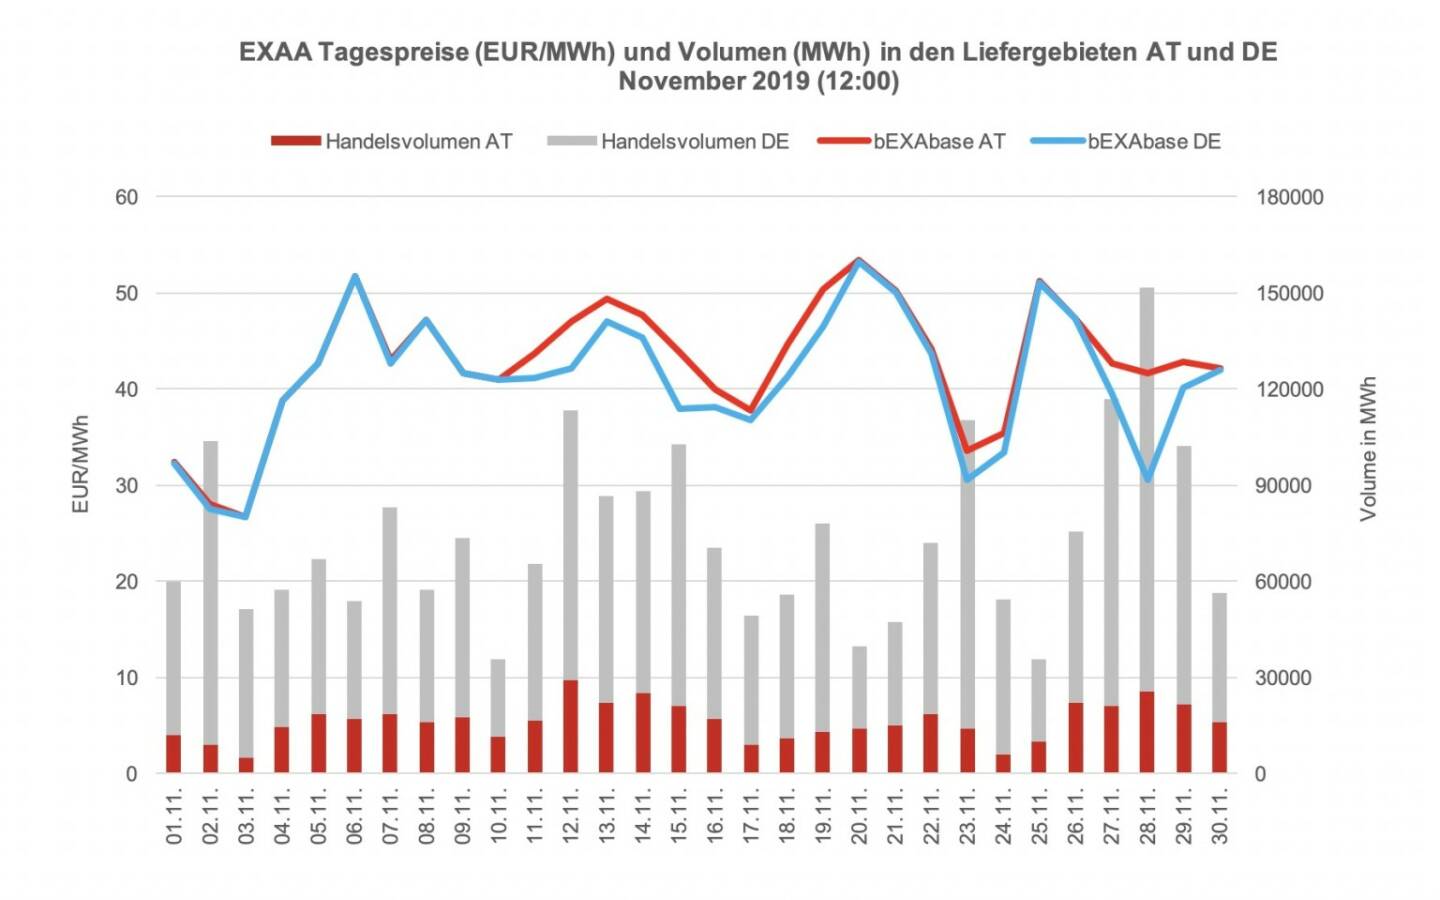 Betrachtet man für die Market Coupling Auktion um 12:00 Uhr den österreichischen und den deutschen Markt getrennt, so konnte im österreichischen Liefergebiet ein Volumen von 570.688 MWh und im deutschen Liefergebiet ein Volumen von 2.592.907 MWh erzielt werden. Somit wurden 18% des Gesamtvolumens im österreichischen Liefergebiet auktioniert.
Die Preise betrugen im Dezember 2019 für die Auktion um 12:00 Uhr im Monatsmittel im österreichischen Marktgebiet für das Baseprodukt (00-24 Uhr) 38,11 EUR/MWh und für das Peakprodukt (08-20 Uhr) 44,26 EUR/MWh, im deutschen Marktgebiet betrugen die Preise für das Baseprodukt (00-24 Uhr) 31,97 EUR/MWh und für das Peakprodukt (08-20 Uhr) 38,57 EUR/MWh (zur besseren Übersicht wird in der Grafik nur der Preis für das Baseprodukt dargestellt).